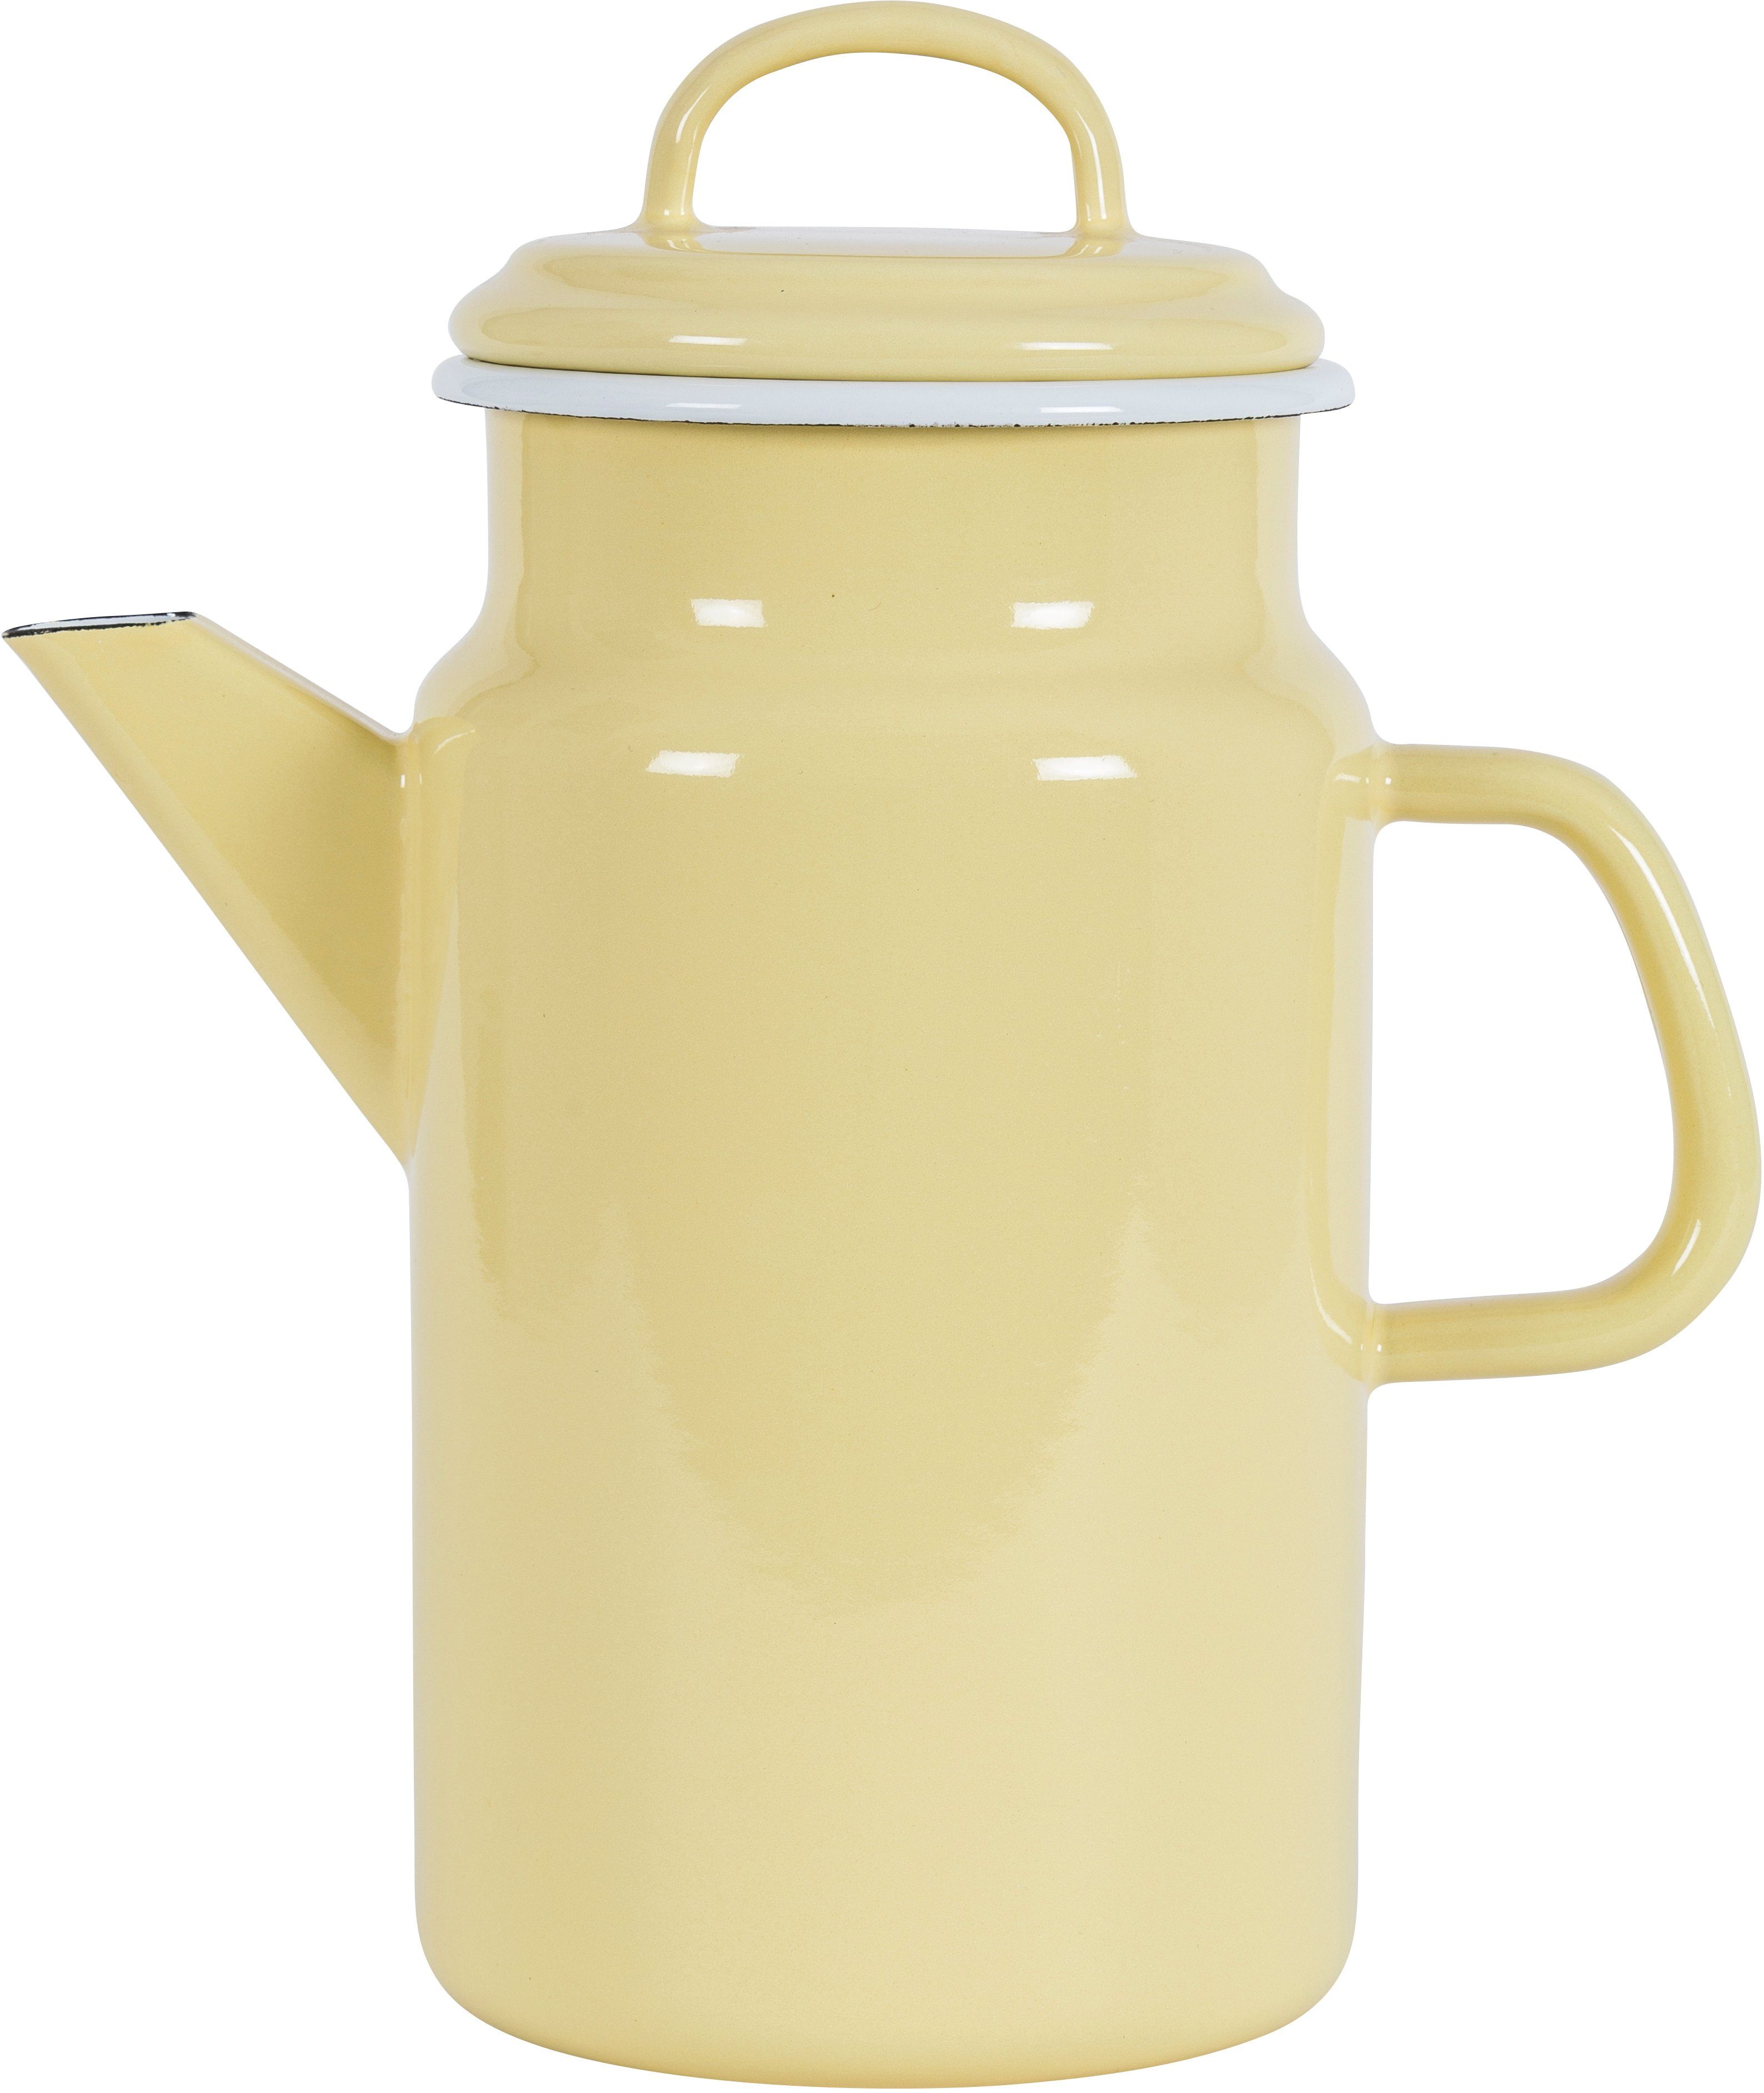 2 Teekanne einer Emaille, KOCKUMS® gelb l, vereint und Teekanne Nachhaltigkeit Jernverk, in Retro-Design